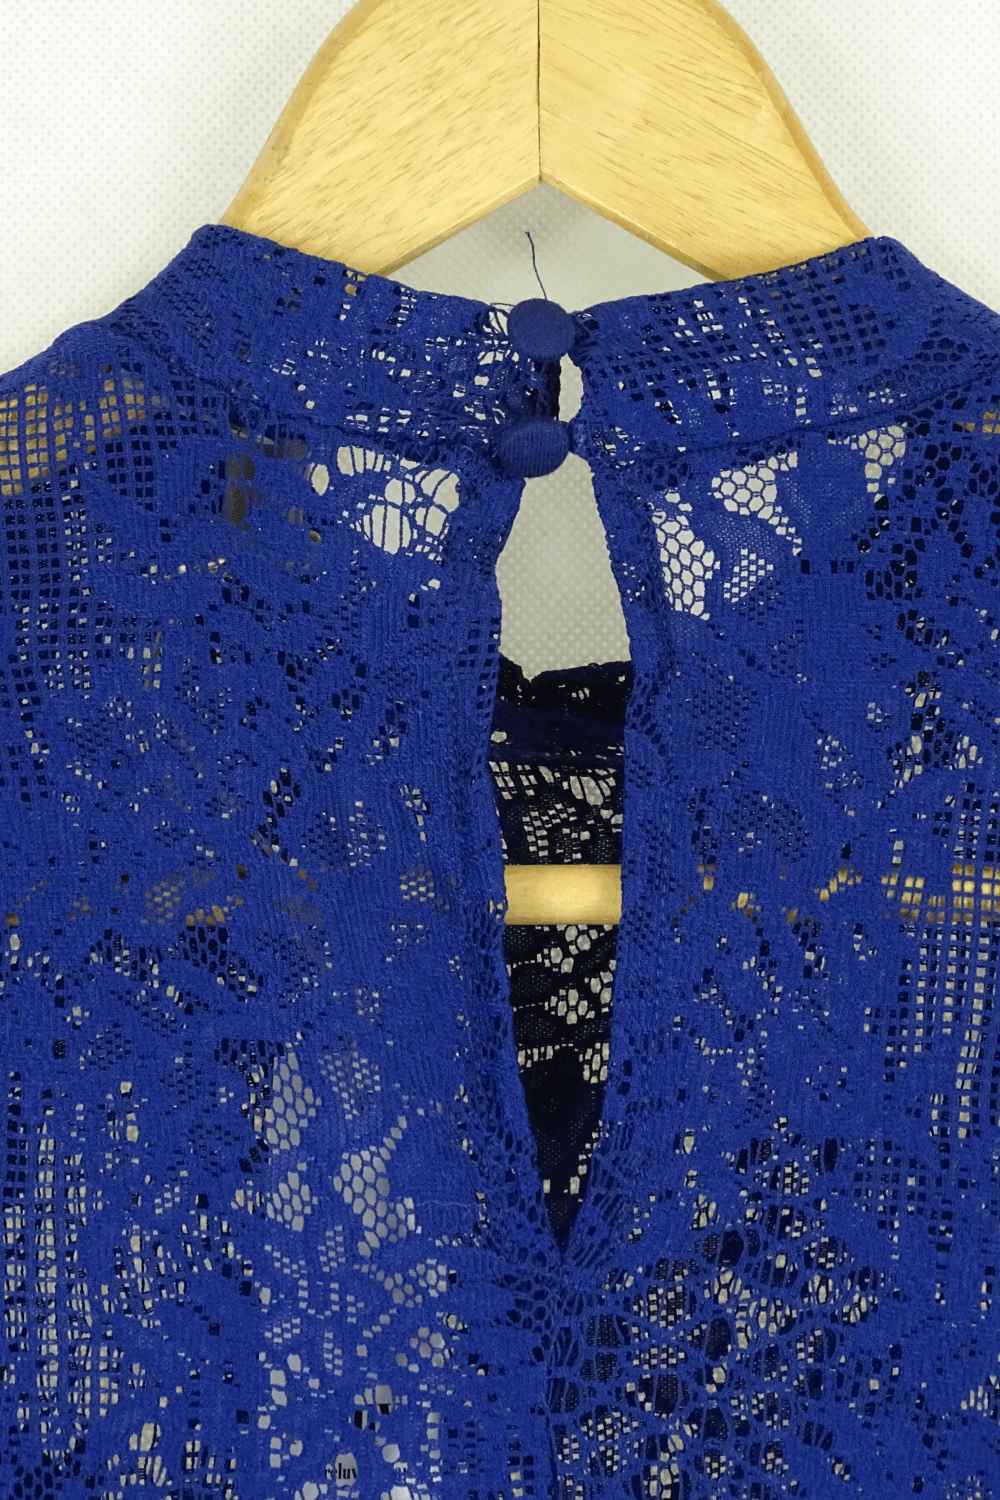 Asos Blue Lace Dress 8